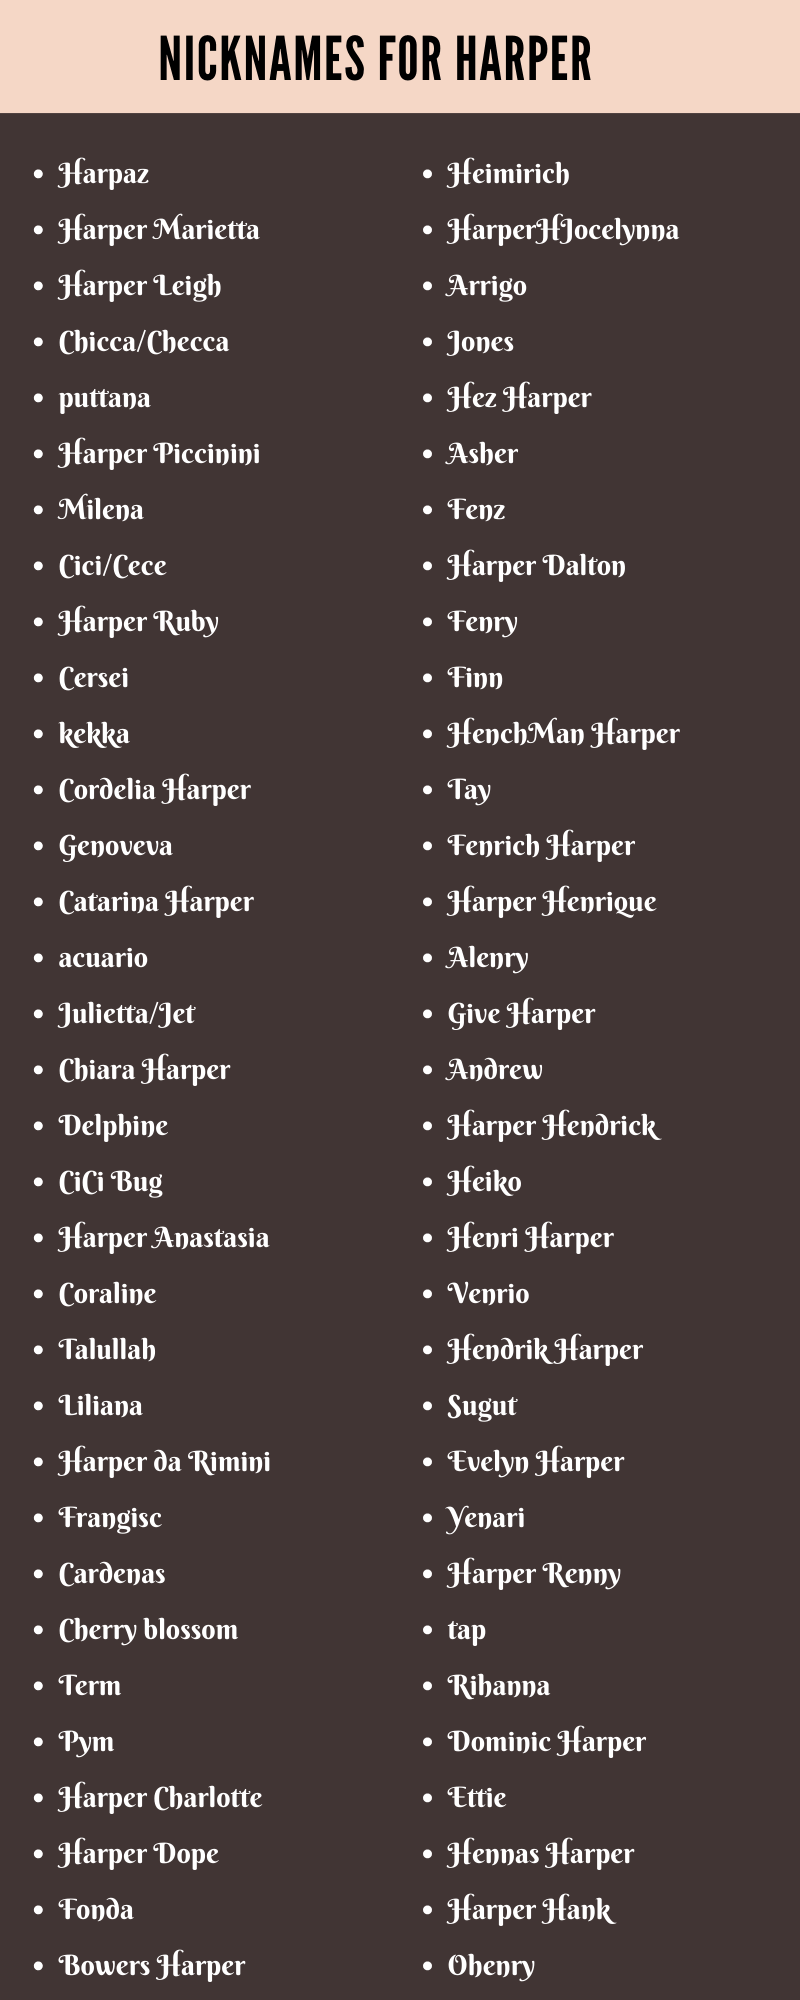 Nicknames For Harper